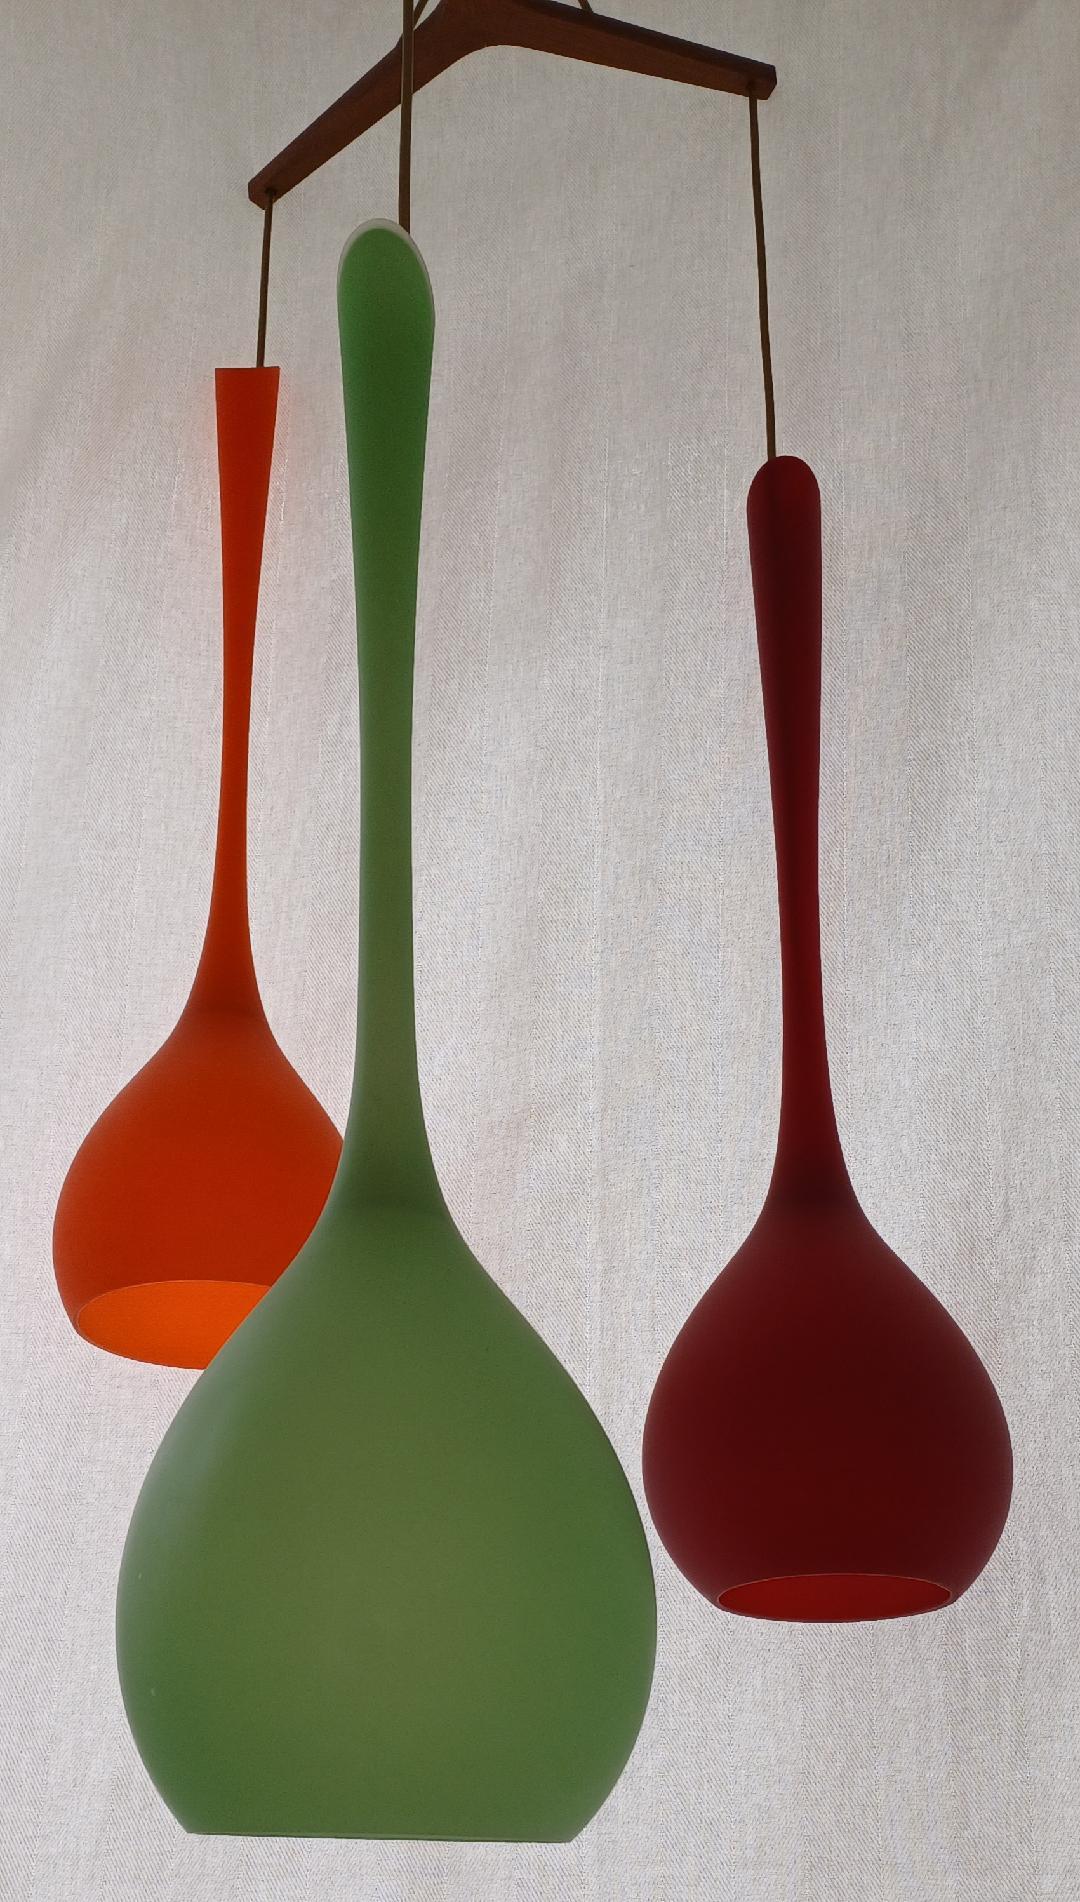 Un ensemble de trois plafonniers en verre de Murano aux formes magnifiques. Trois couleurs différentes : vert, orange et rouge, vers les années 1960. Les dimensions de la lampe individuelle sont de 74 cm de hauteur et de 19 cm de diamètre. Le